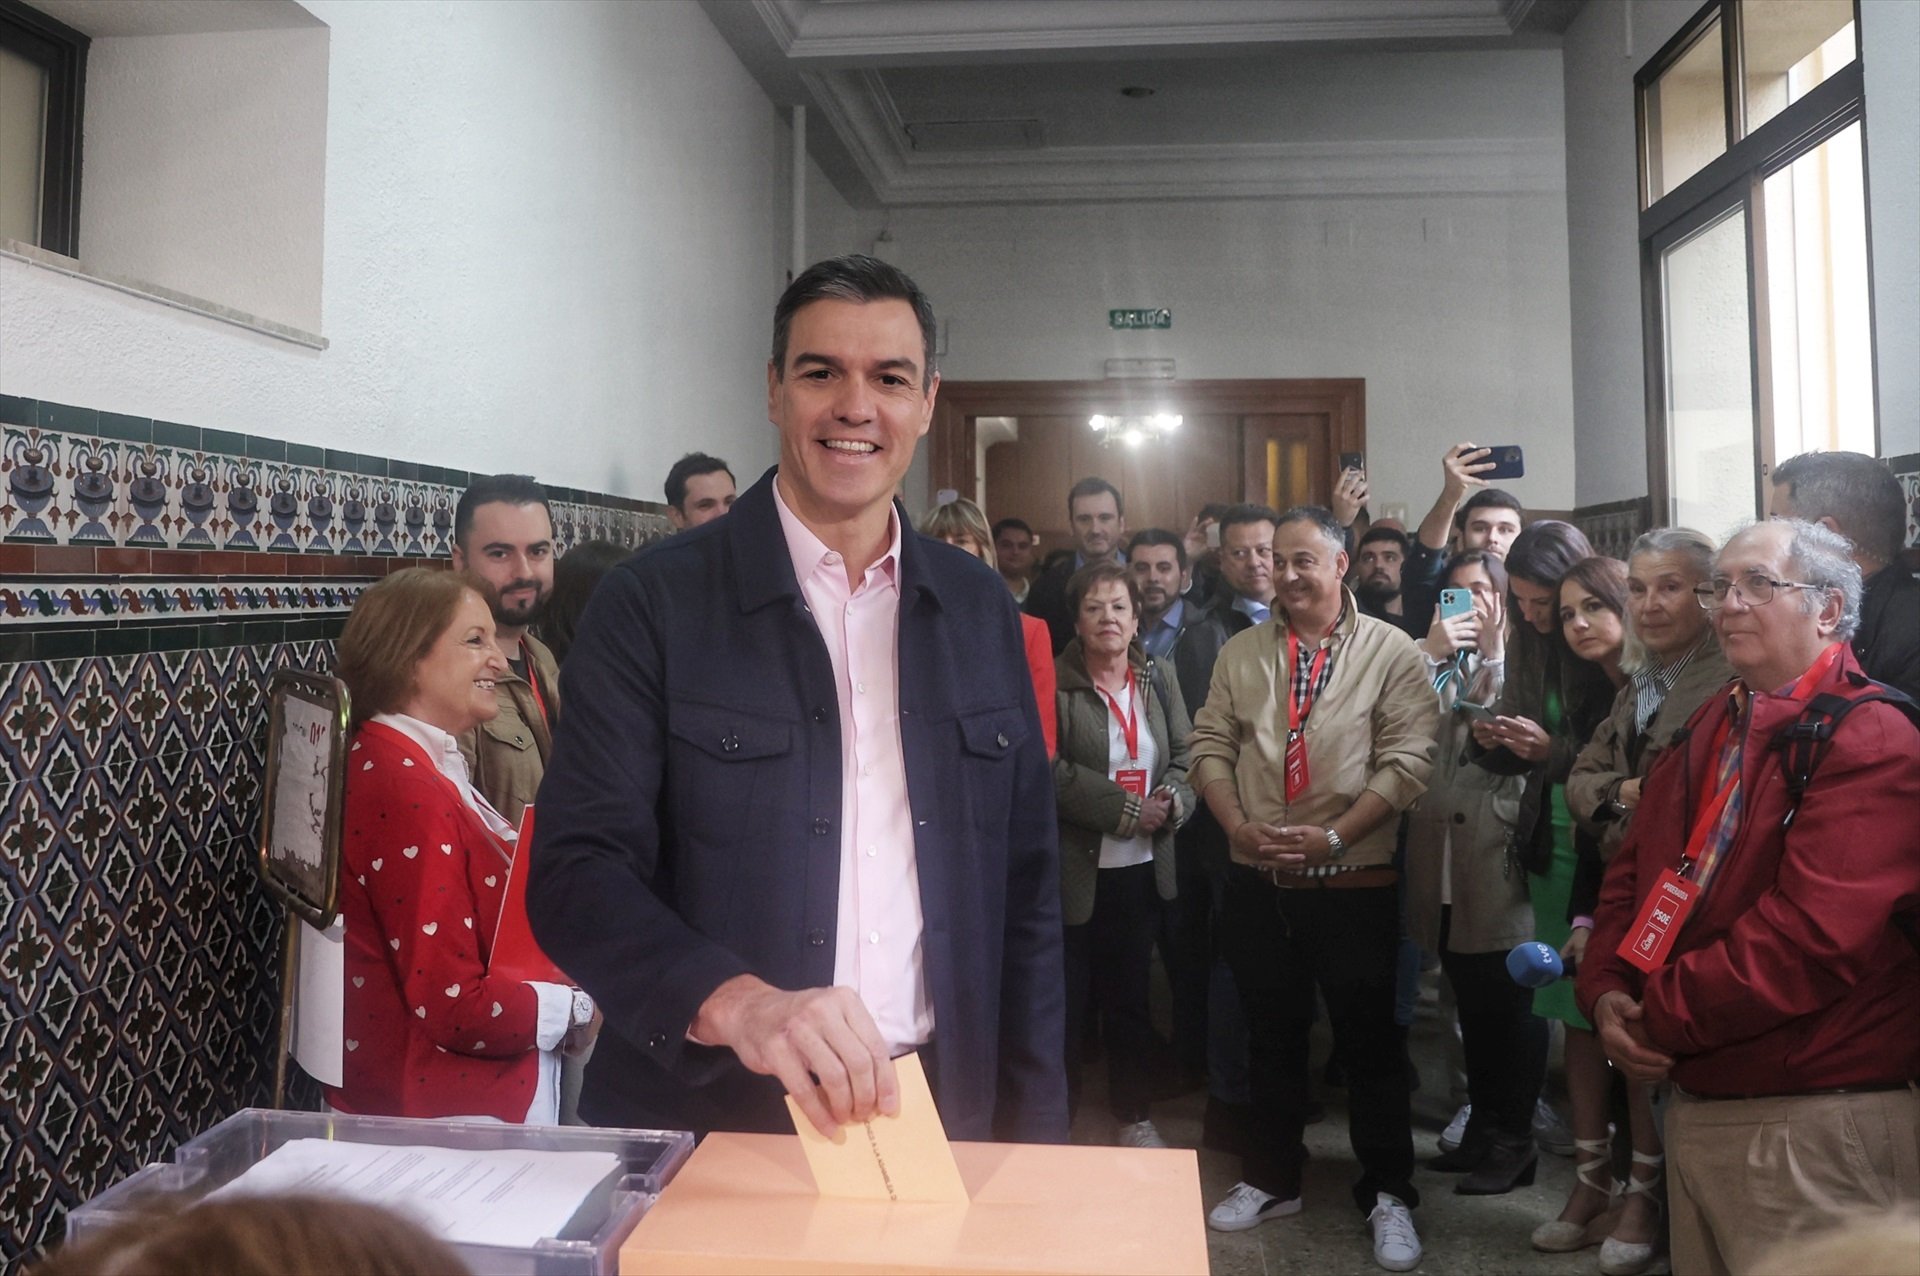 Pedro Sánchez, escridassat al seu col·legi electoral: "Que et voti Txapote!" | VÍDEO